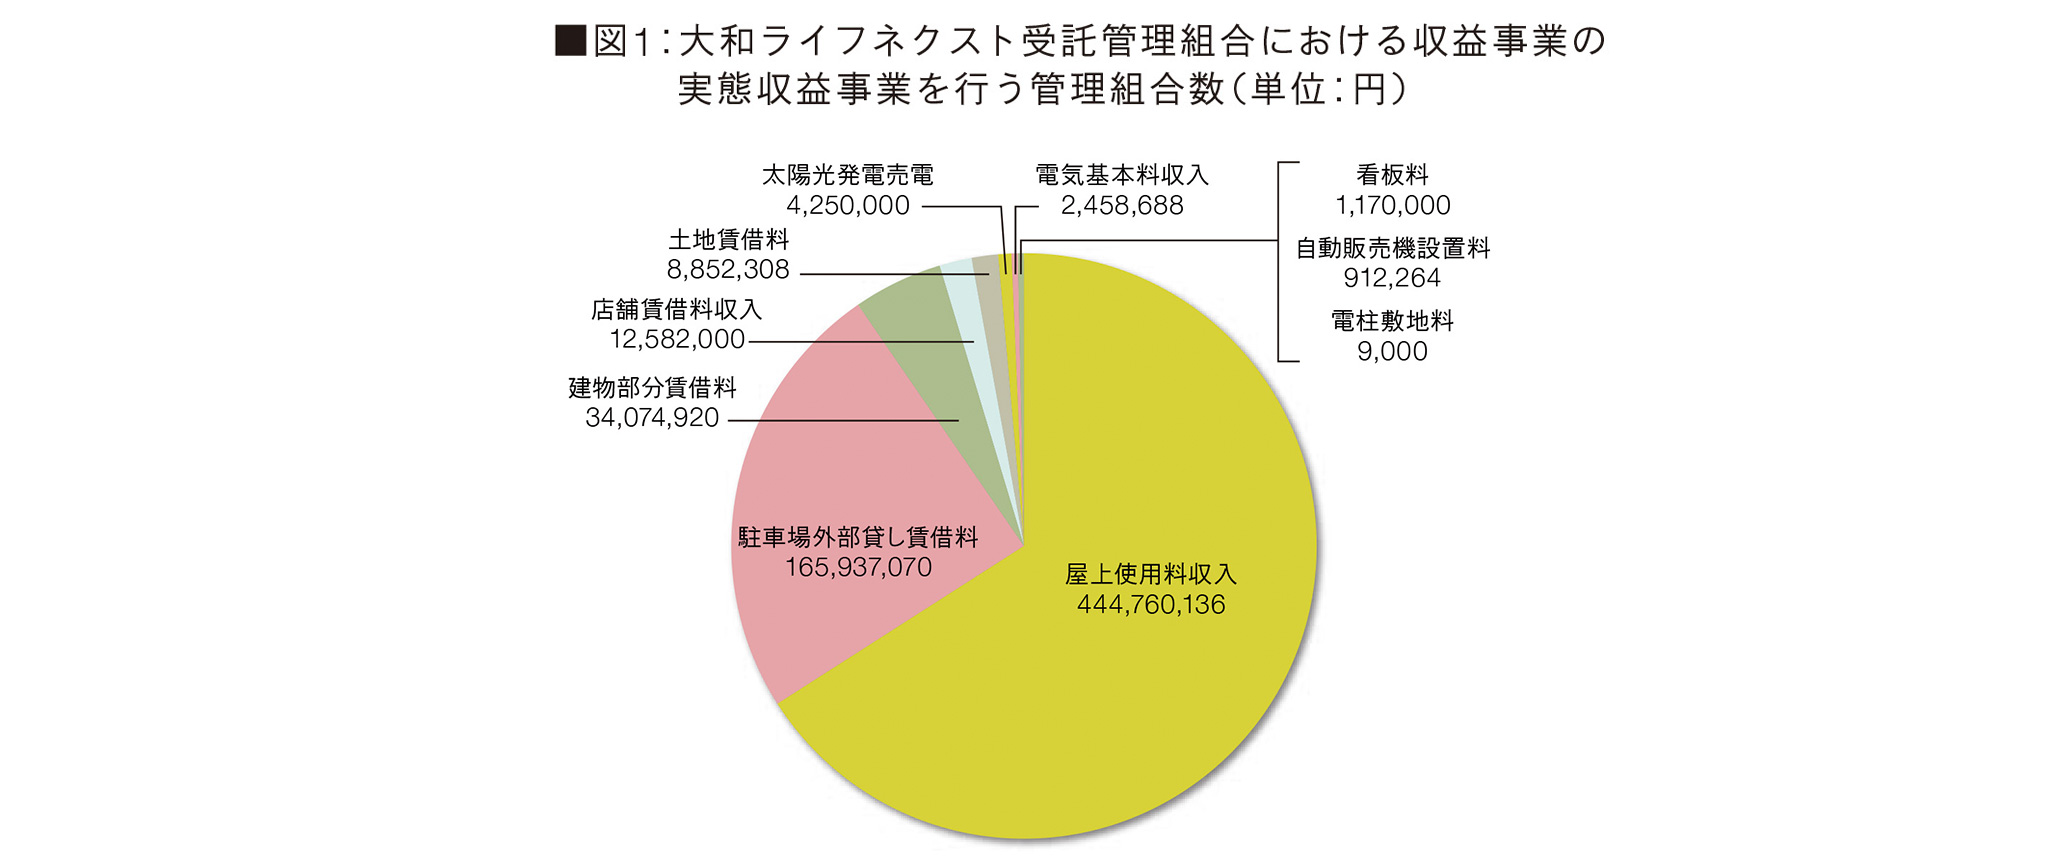 図1:大和ライフネクスト受託管理組合における収益事業の実態収益事業を行う管理組合数(単位:円)